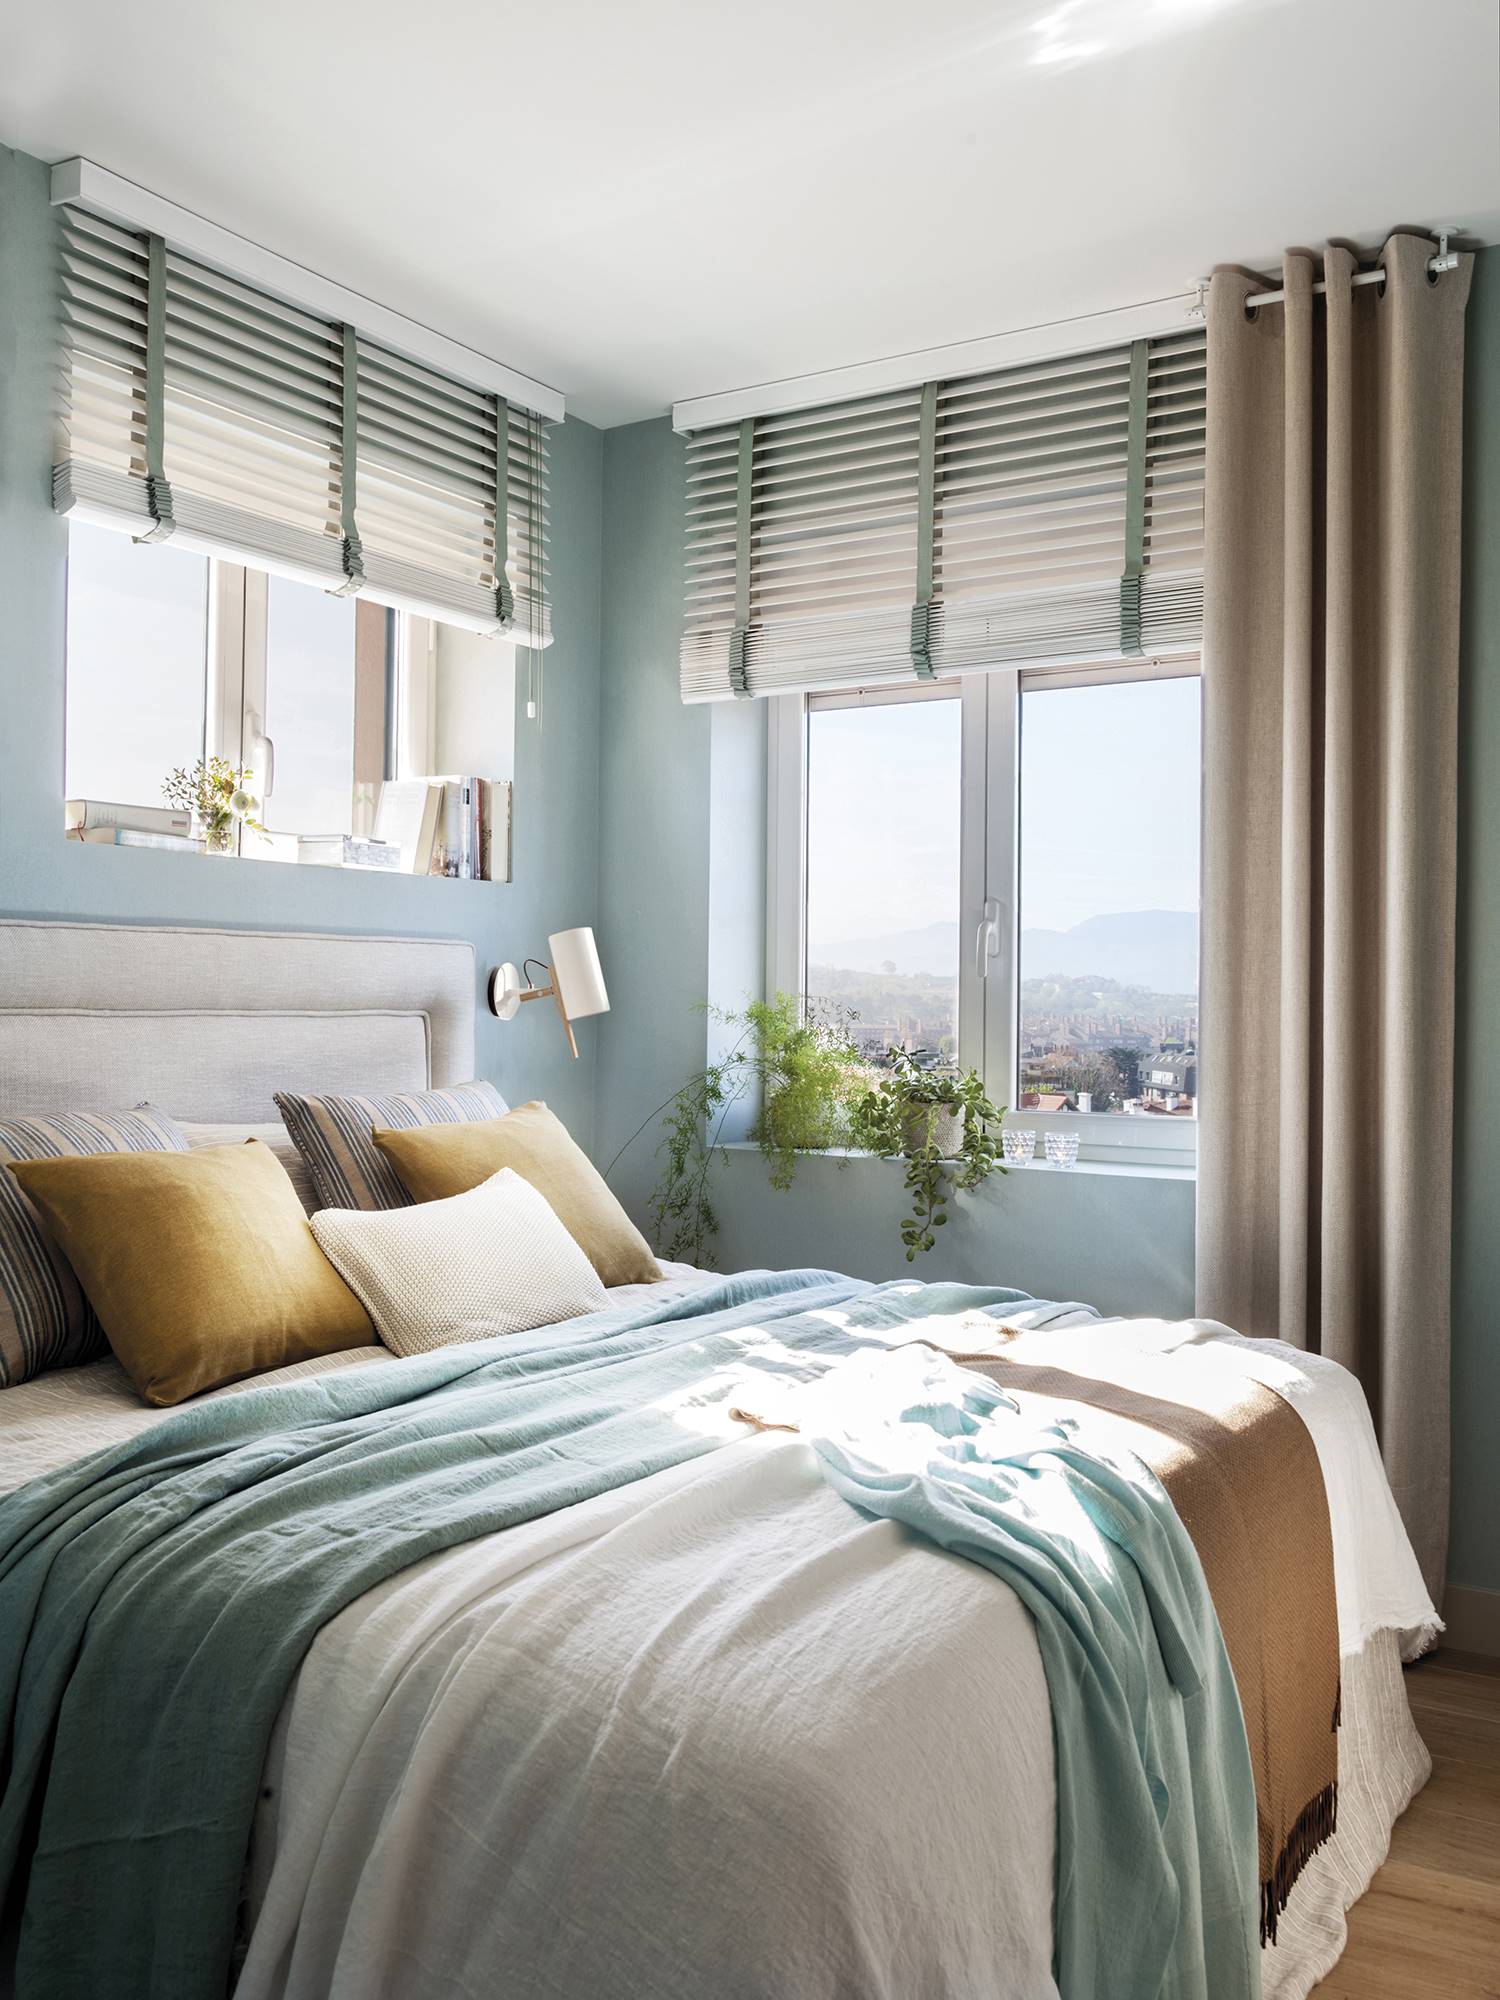 segmento paso Confundir 31 dormitorios decorados en azul: con pintura, papel pintado, textiles,  complementos...